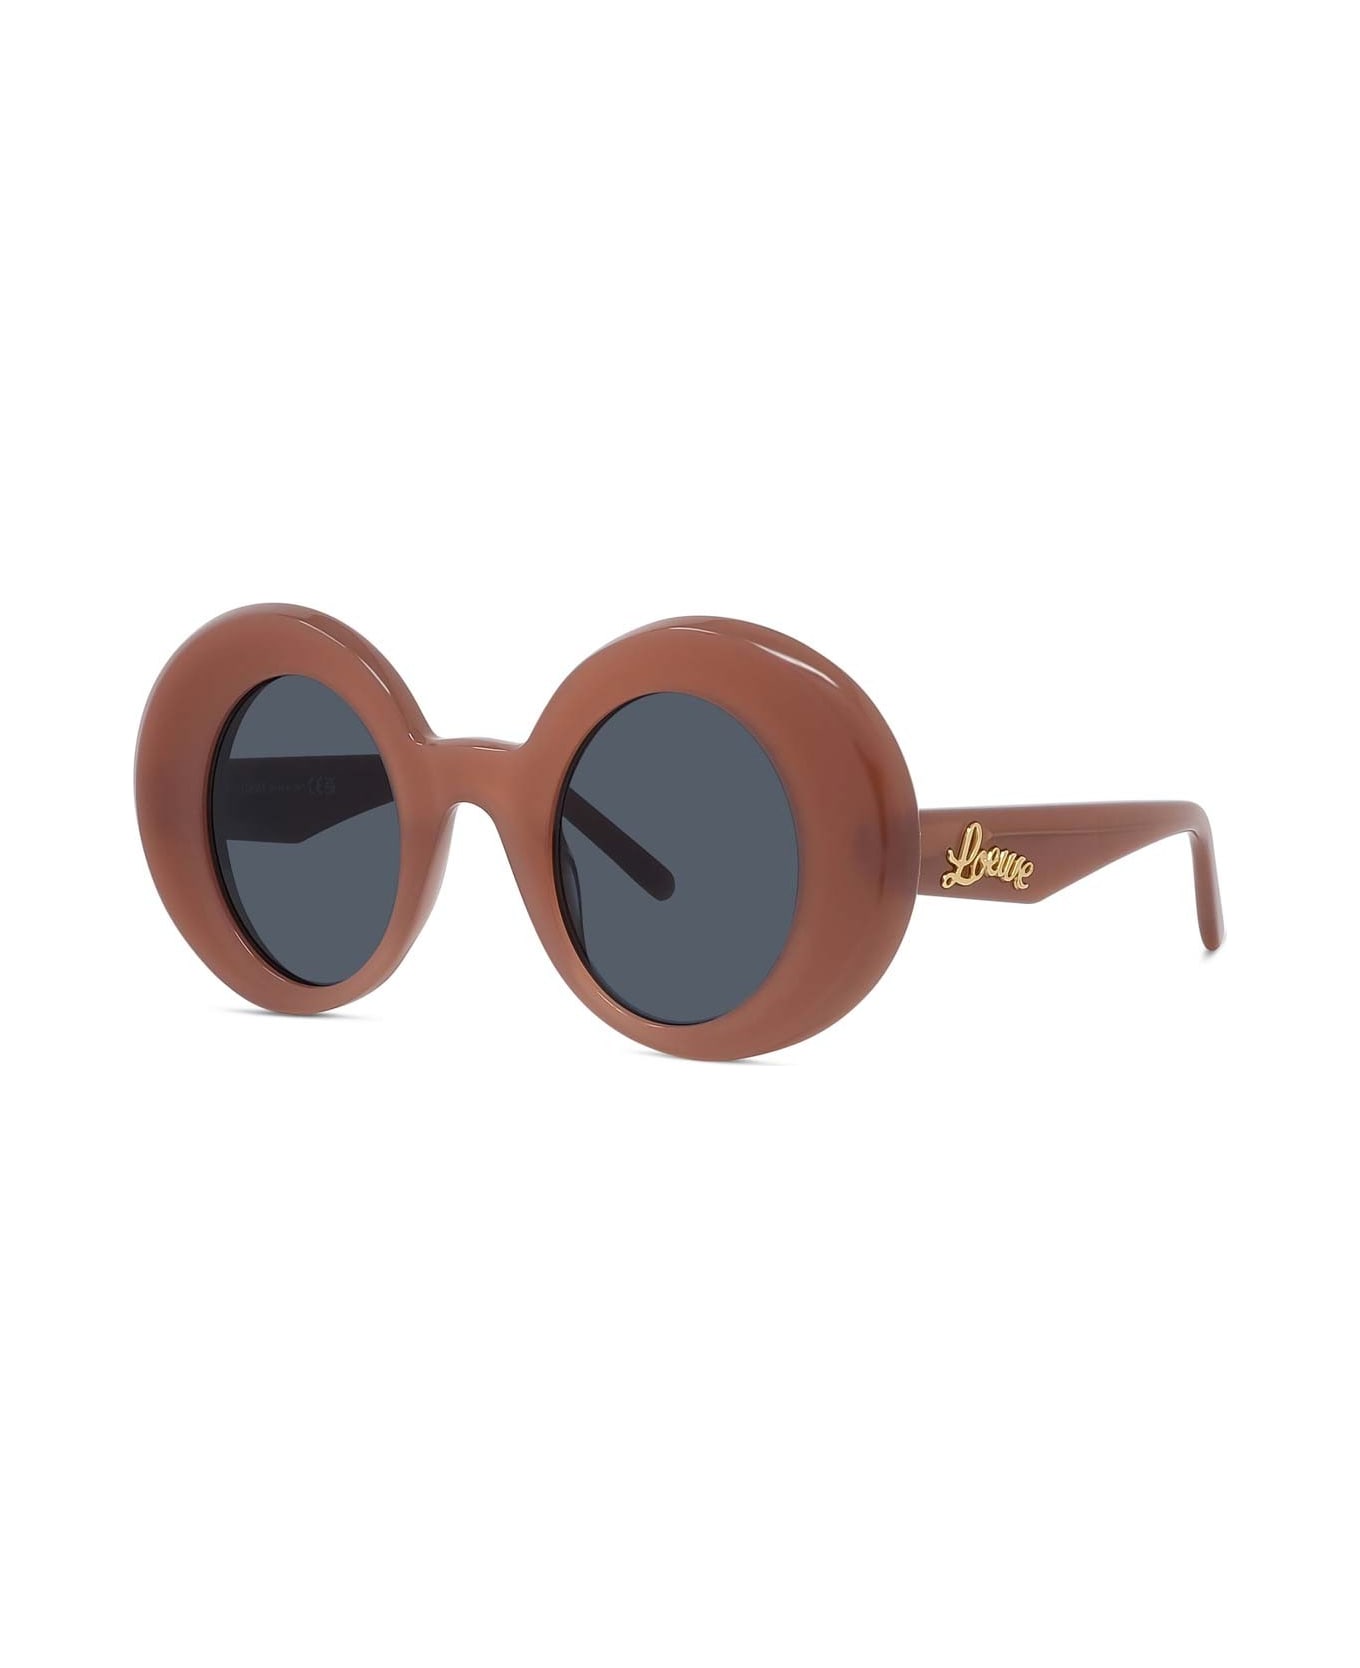 Loewe Sunglasses - Rosso/Grigio サングラス